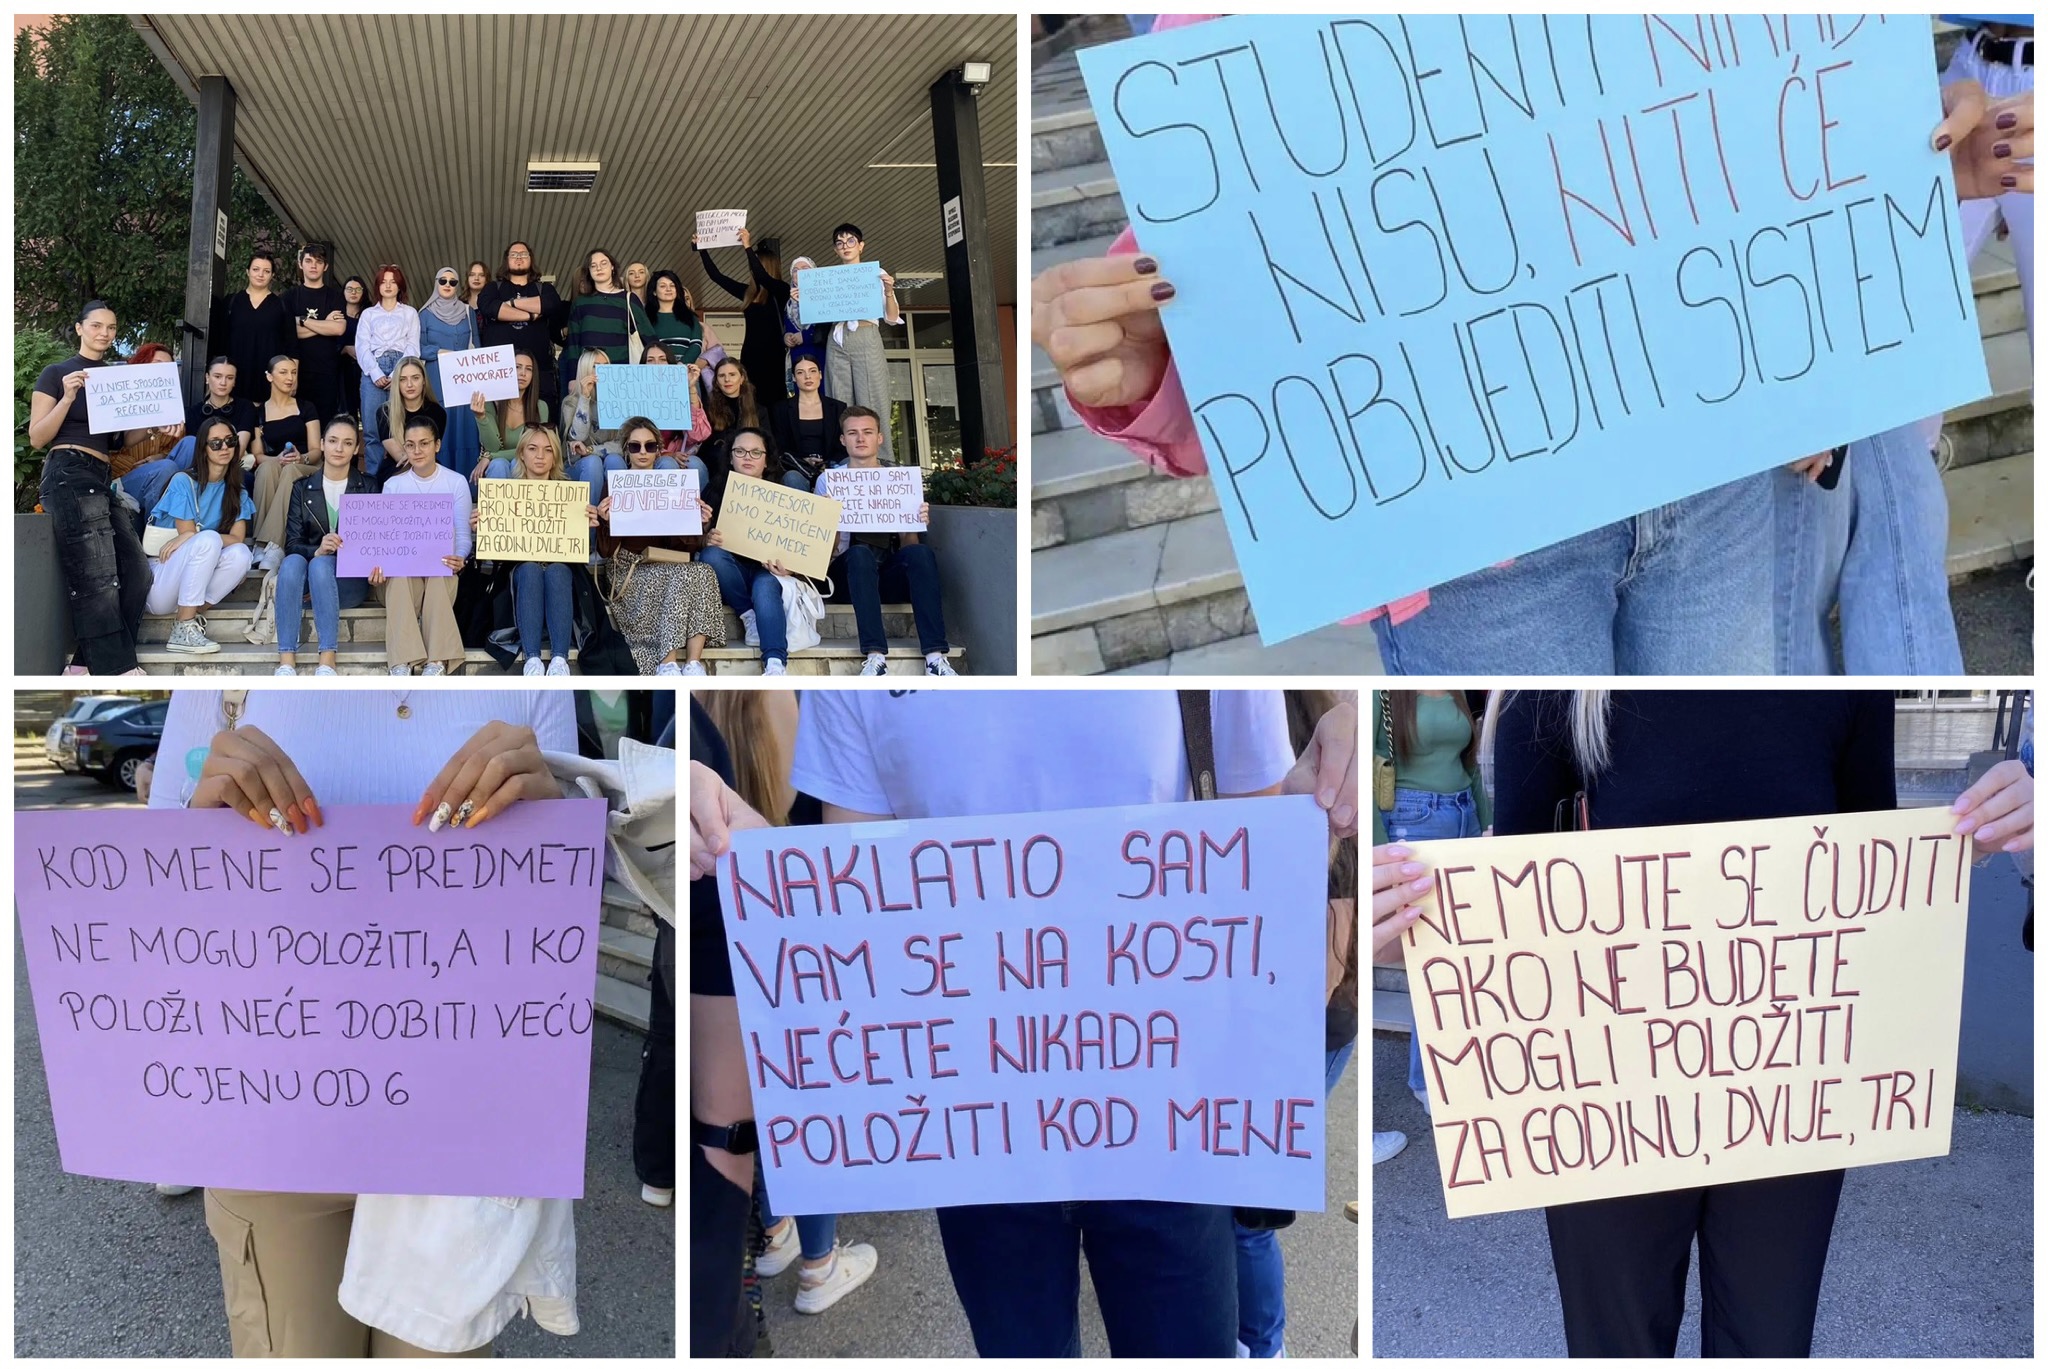 protesti studenata na filozofskom fakultetu univerziteta u tuzli: studenti se žale na neadekvatno ponašanje profesora